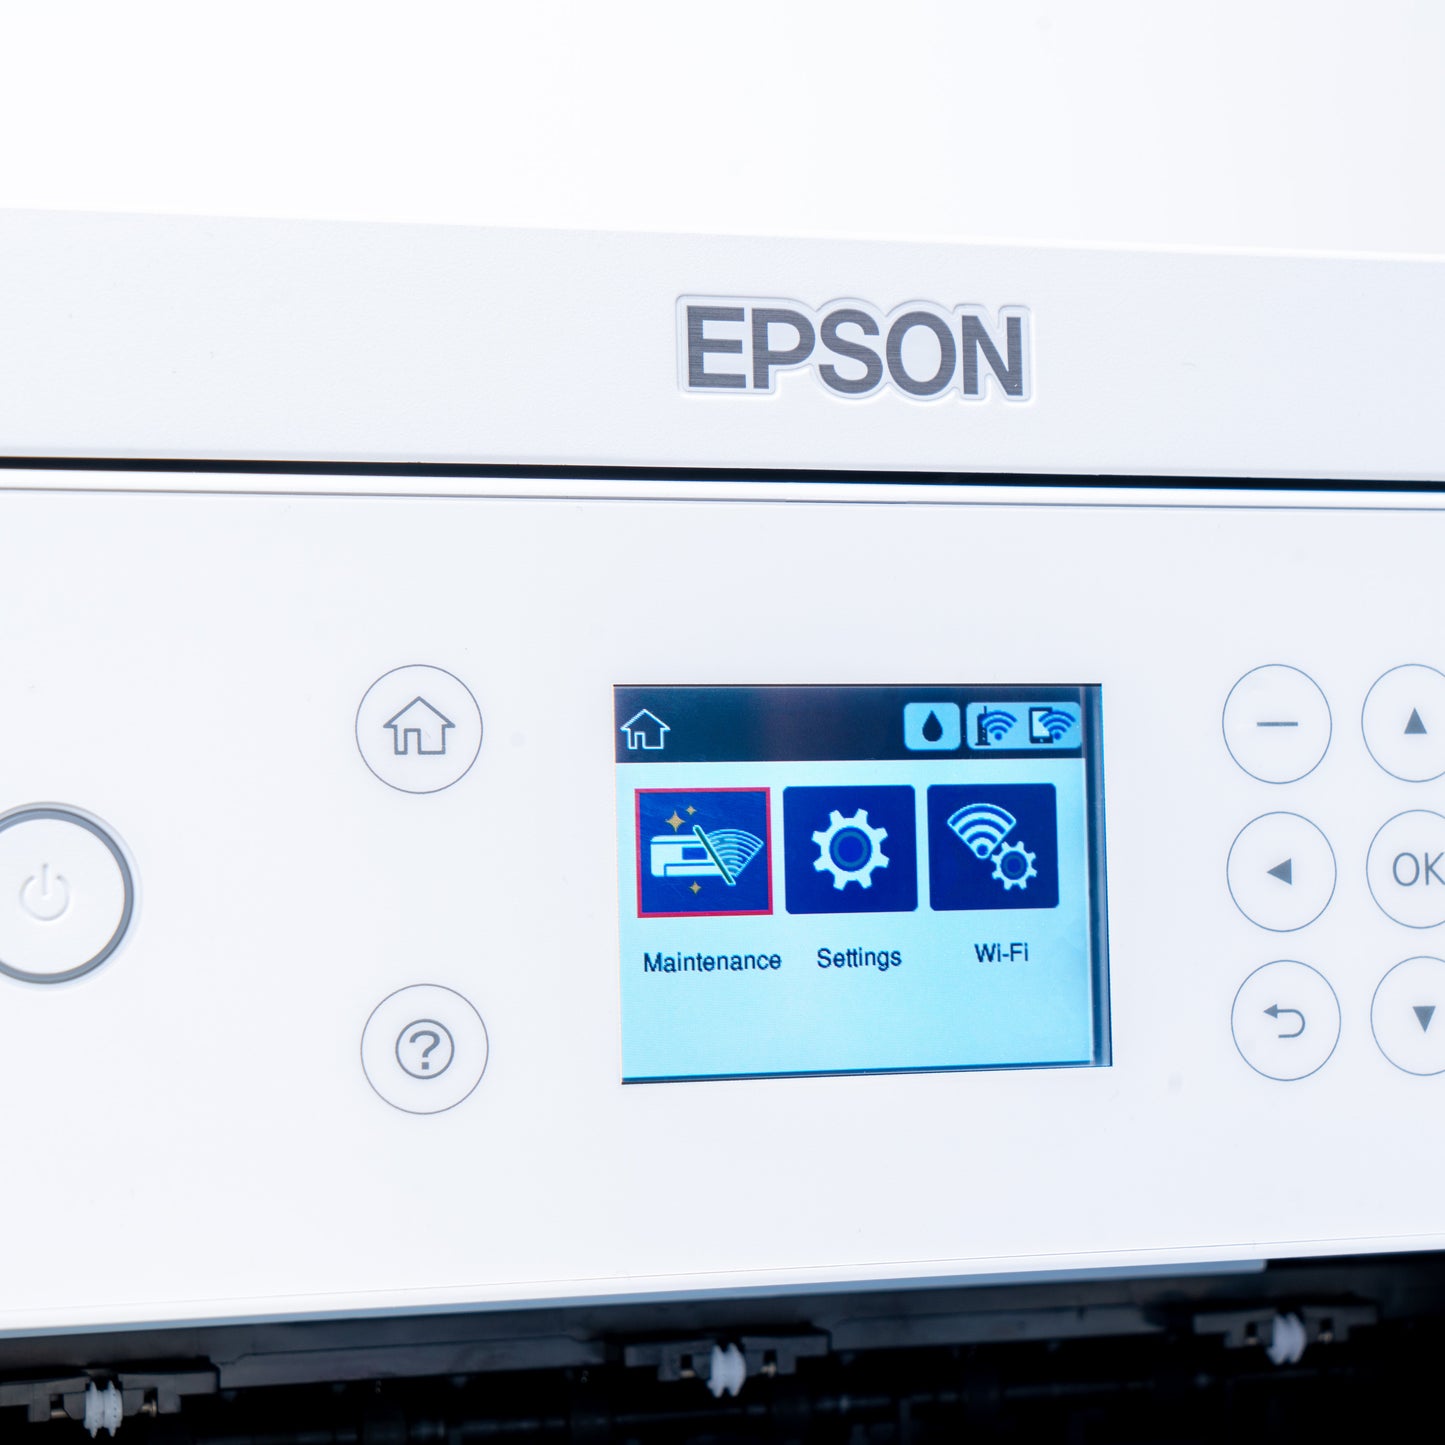 Epson® F170 Sublimation Kit